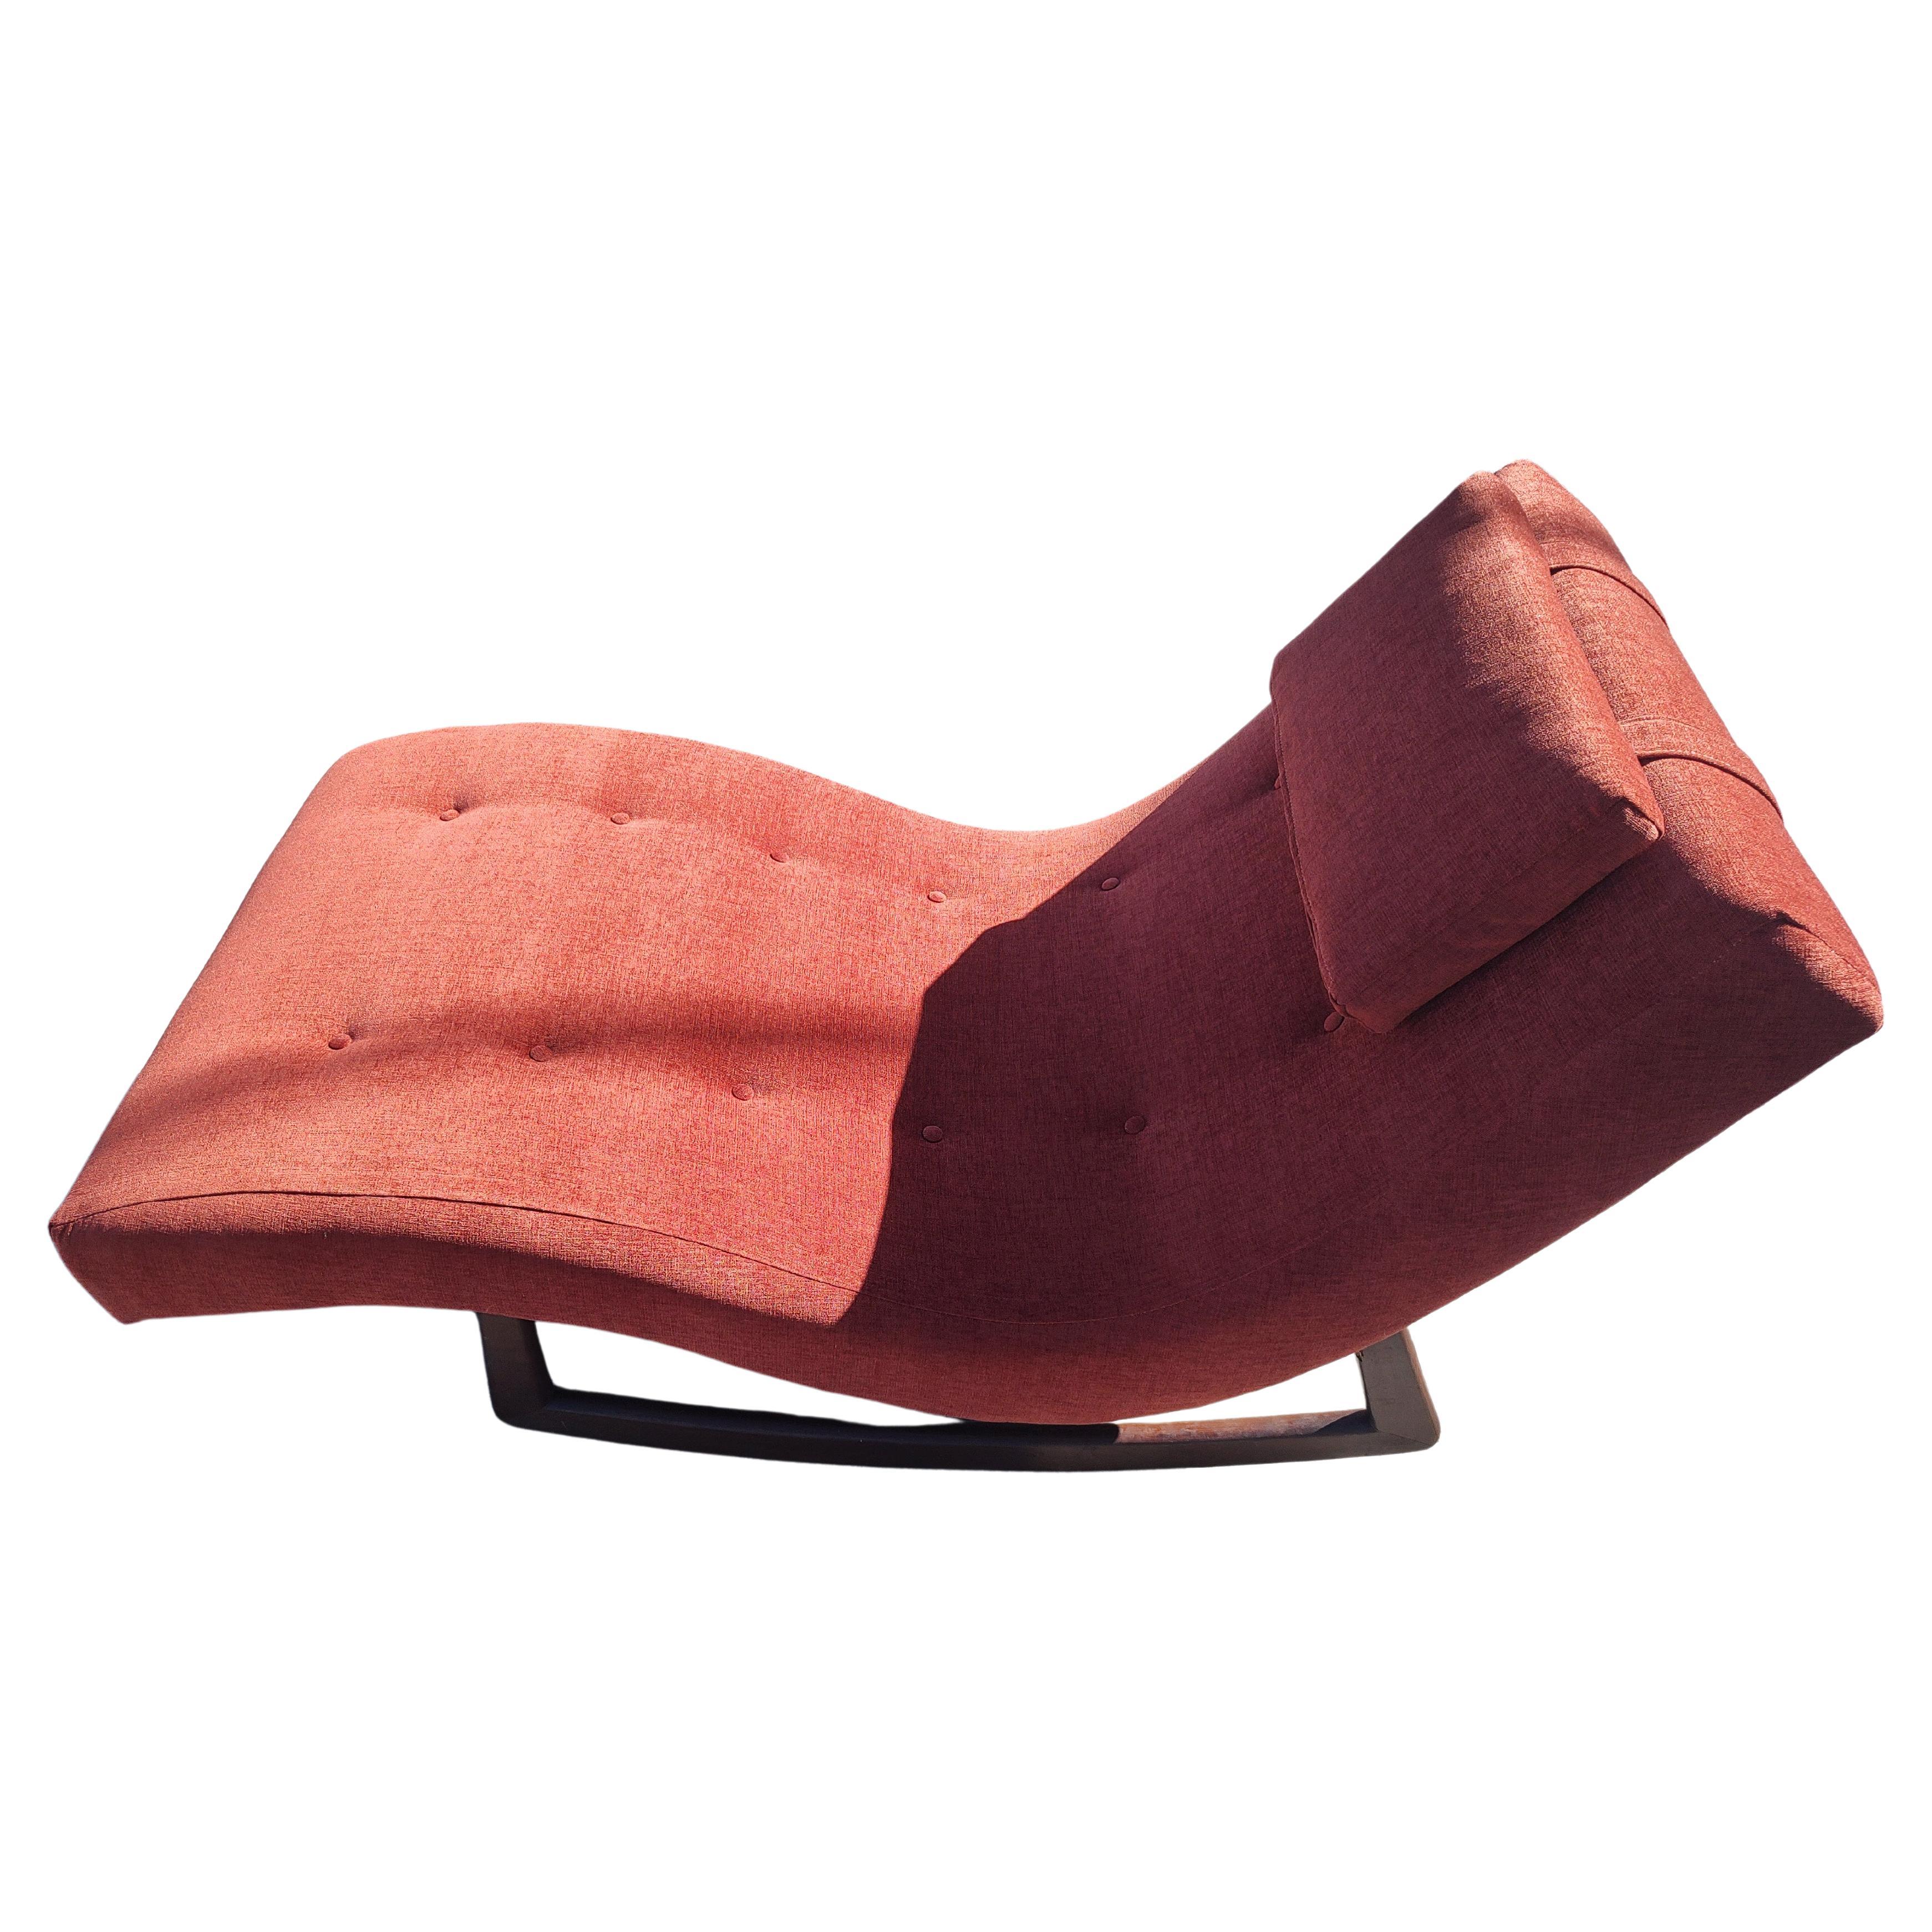 Fabuleuse chaise longue Wave Rocker d'Adrian Pearsall, créée vers 1960 avec une caisse en noyer et entièrement retapissée dans un tissu doux et texturé de type Boucle. Coussin intégré à l'appui-tête pour plus de confort. Un design étonnant conçu